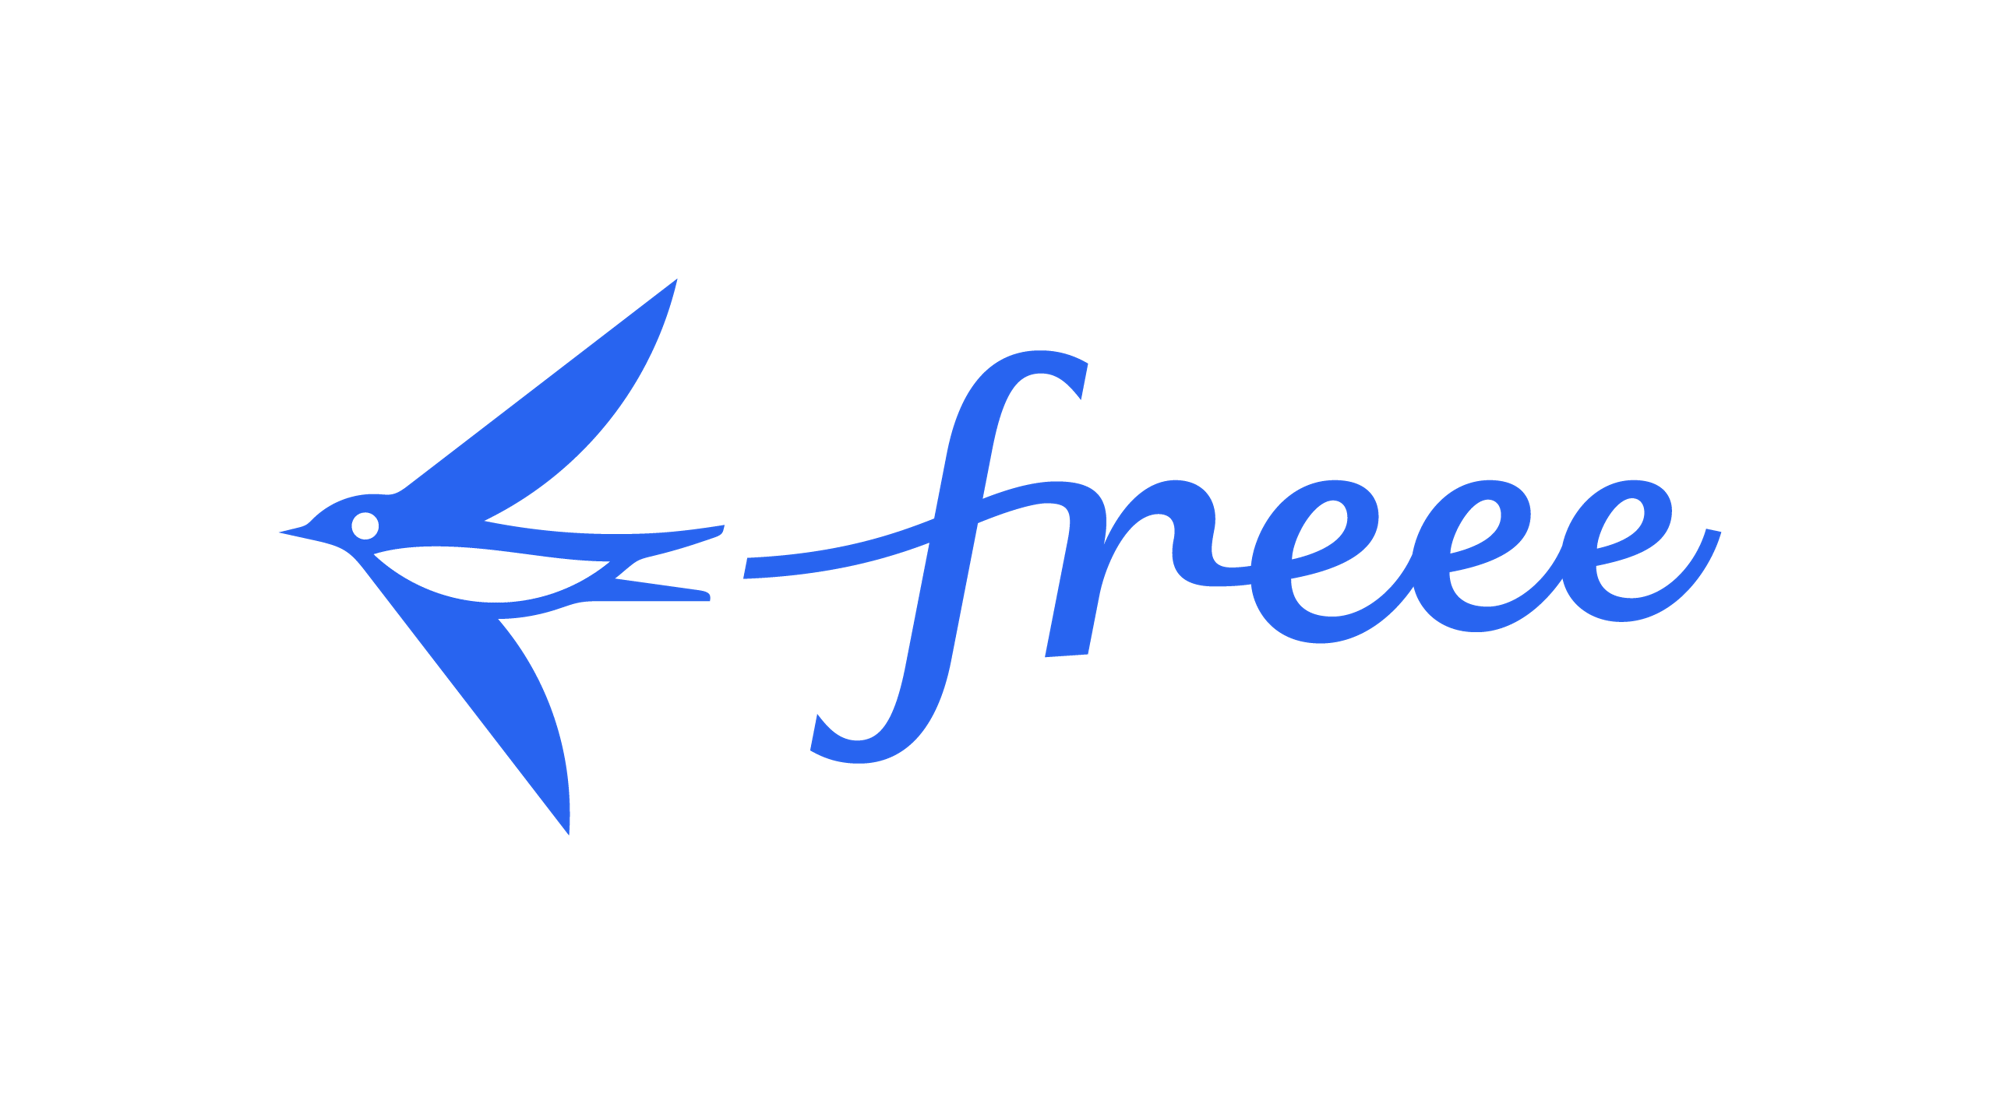 Freee_logo